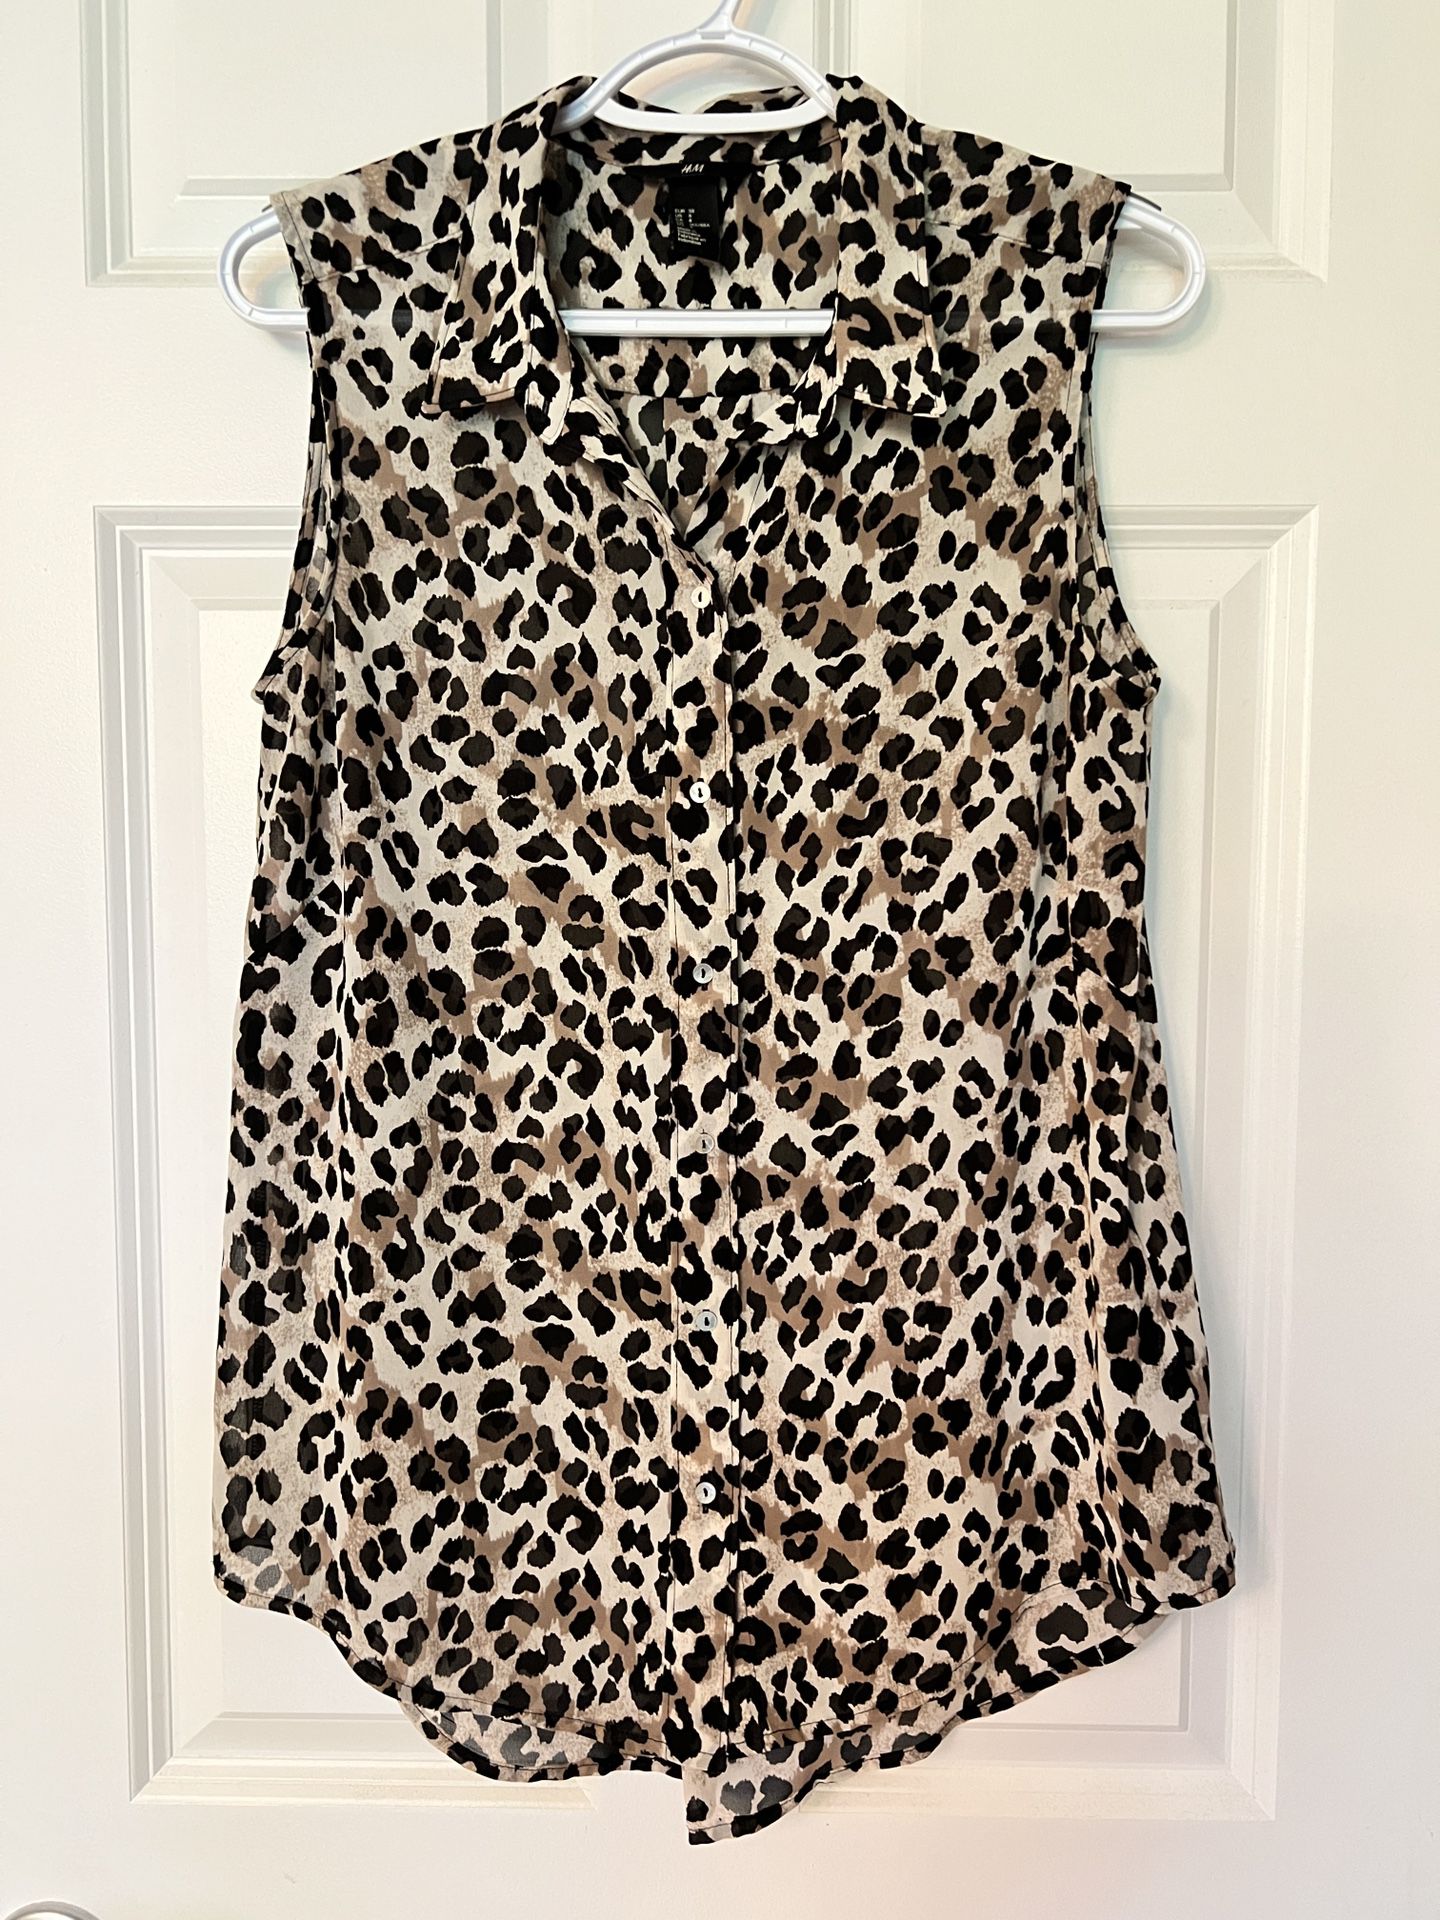 H&M women’s leopard print sheer sleeveless button down top.